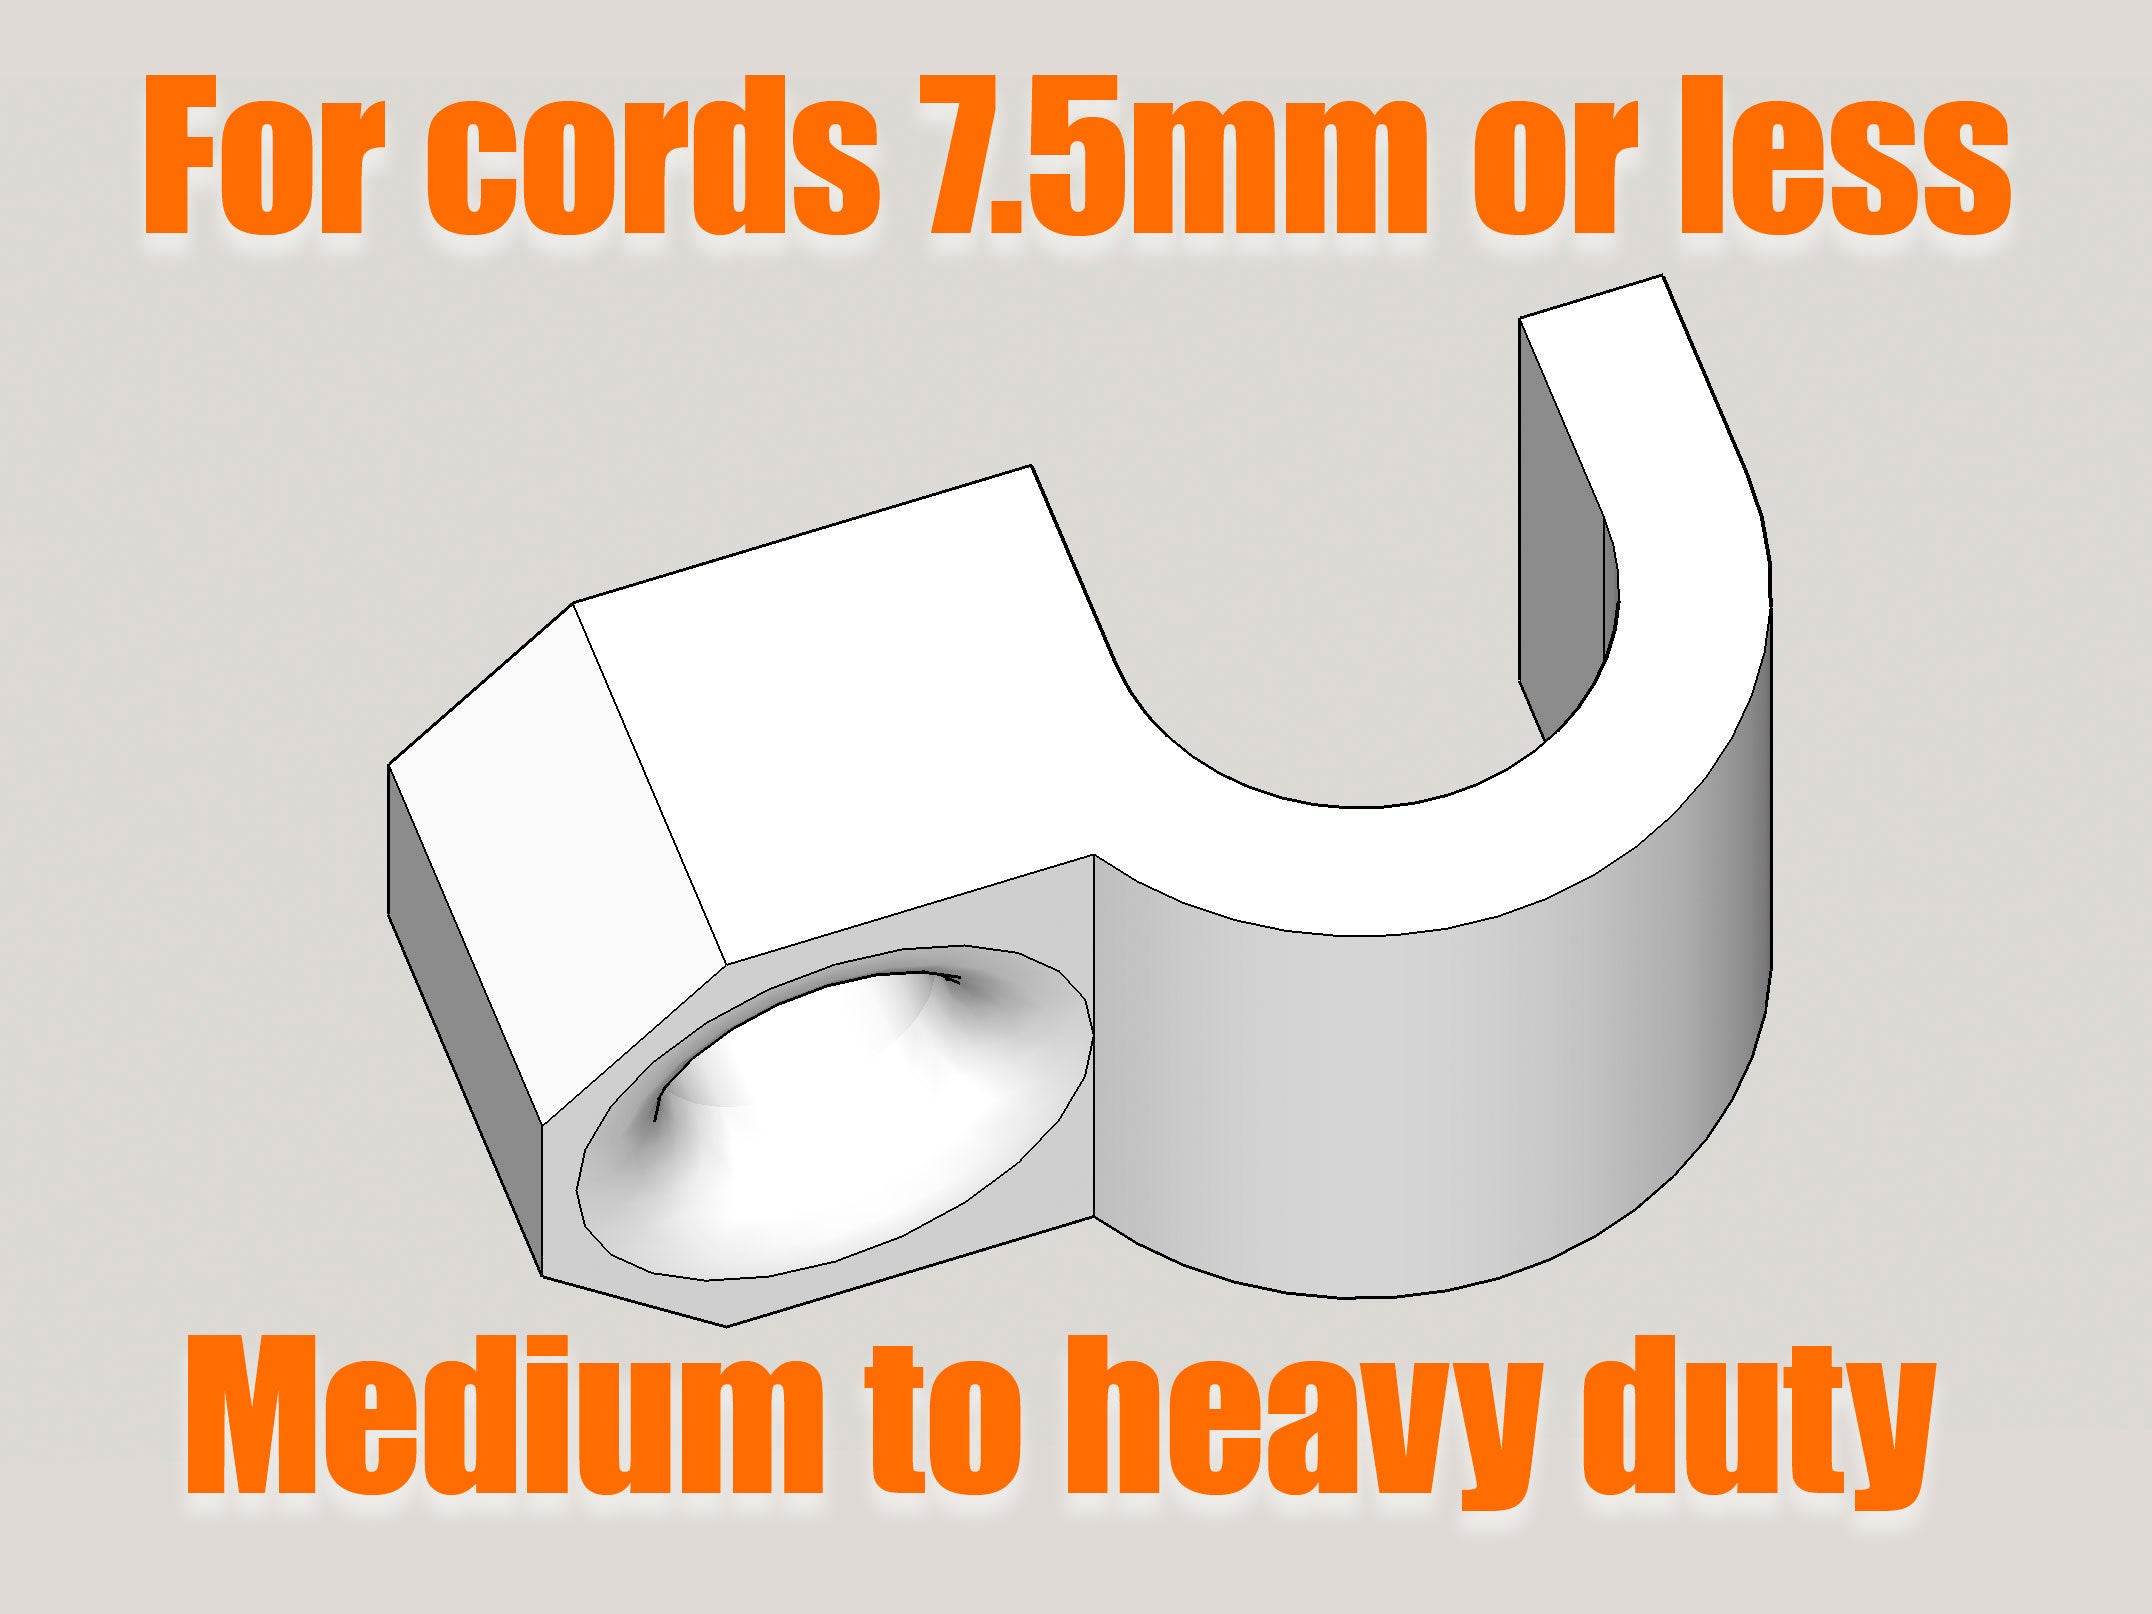 Inschroefbare kabelklem en draadorganiser voor draden van 7,5 mm of minder